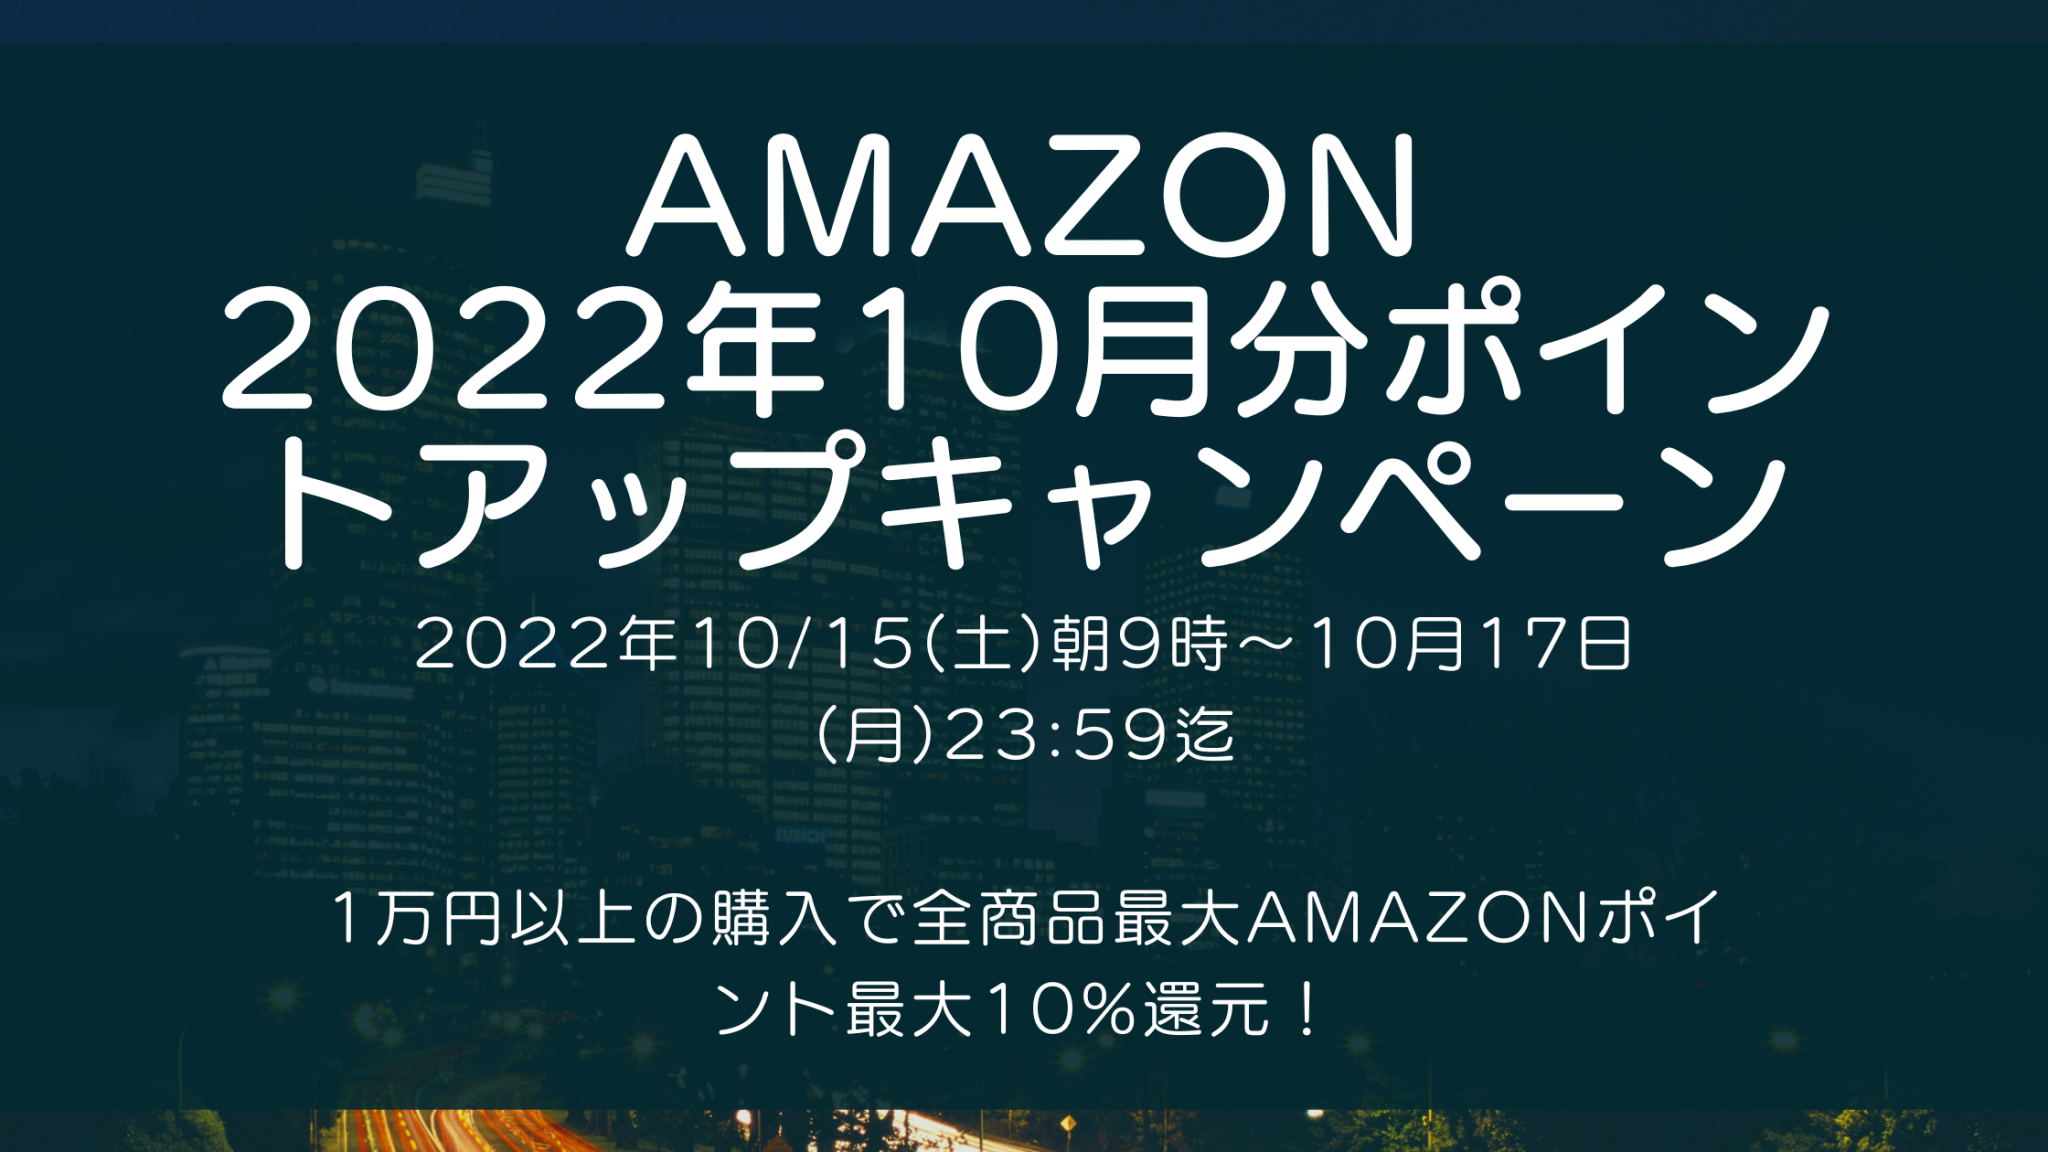 Amazonにて2022年10月実施分の「ポイントアップキャンペーン」を10月15日(土)朝9時から約3日間開催 #Amazon #アマゾン #セール #特価 #キャンペーン